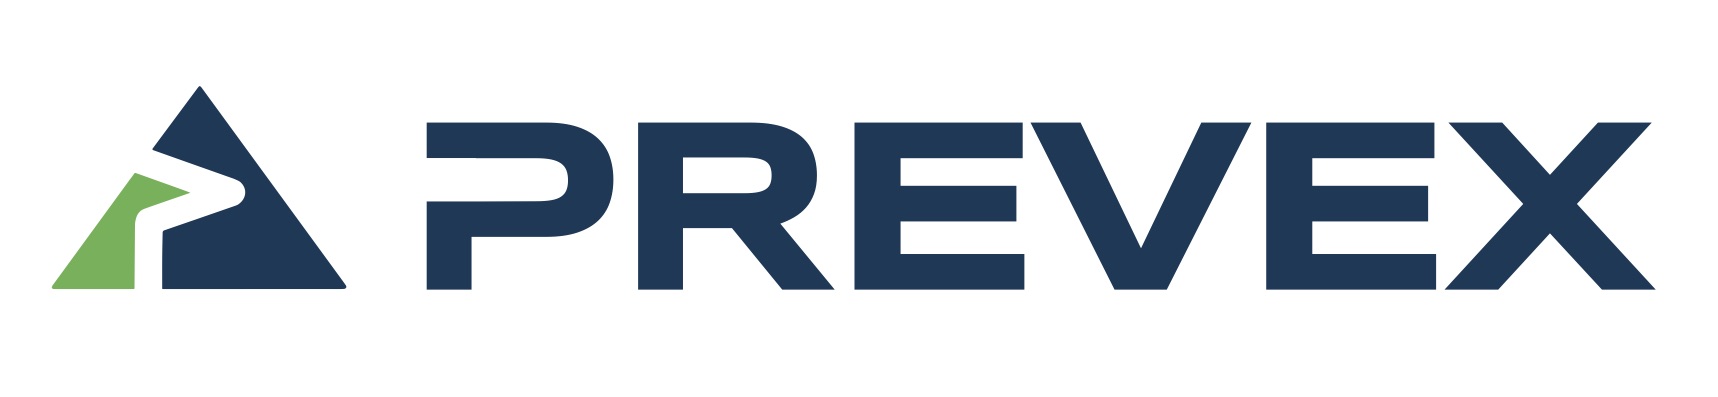 Prevex-logotype-1